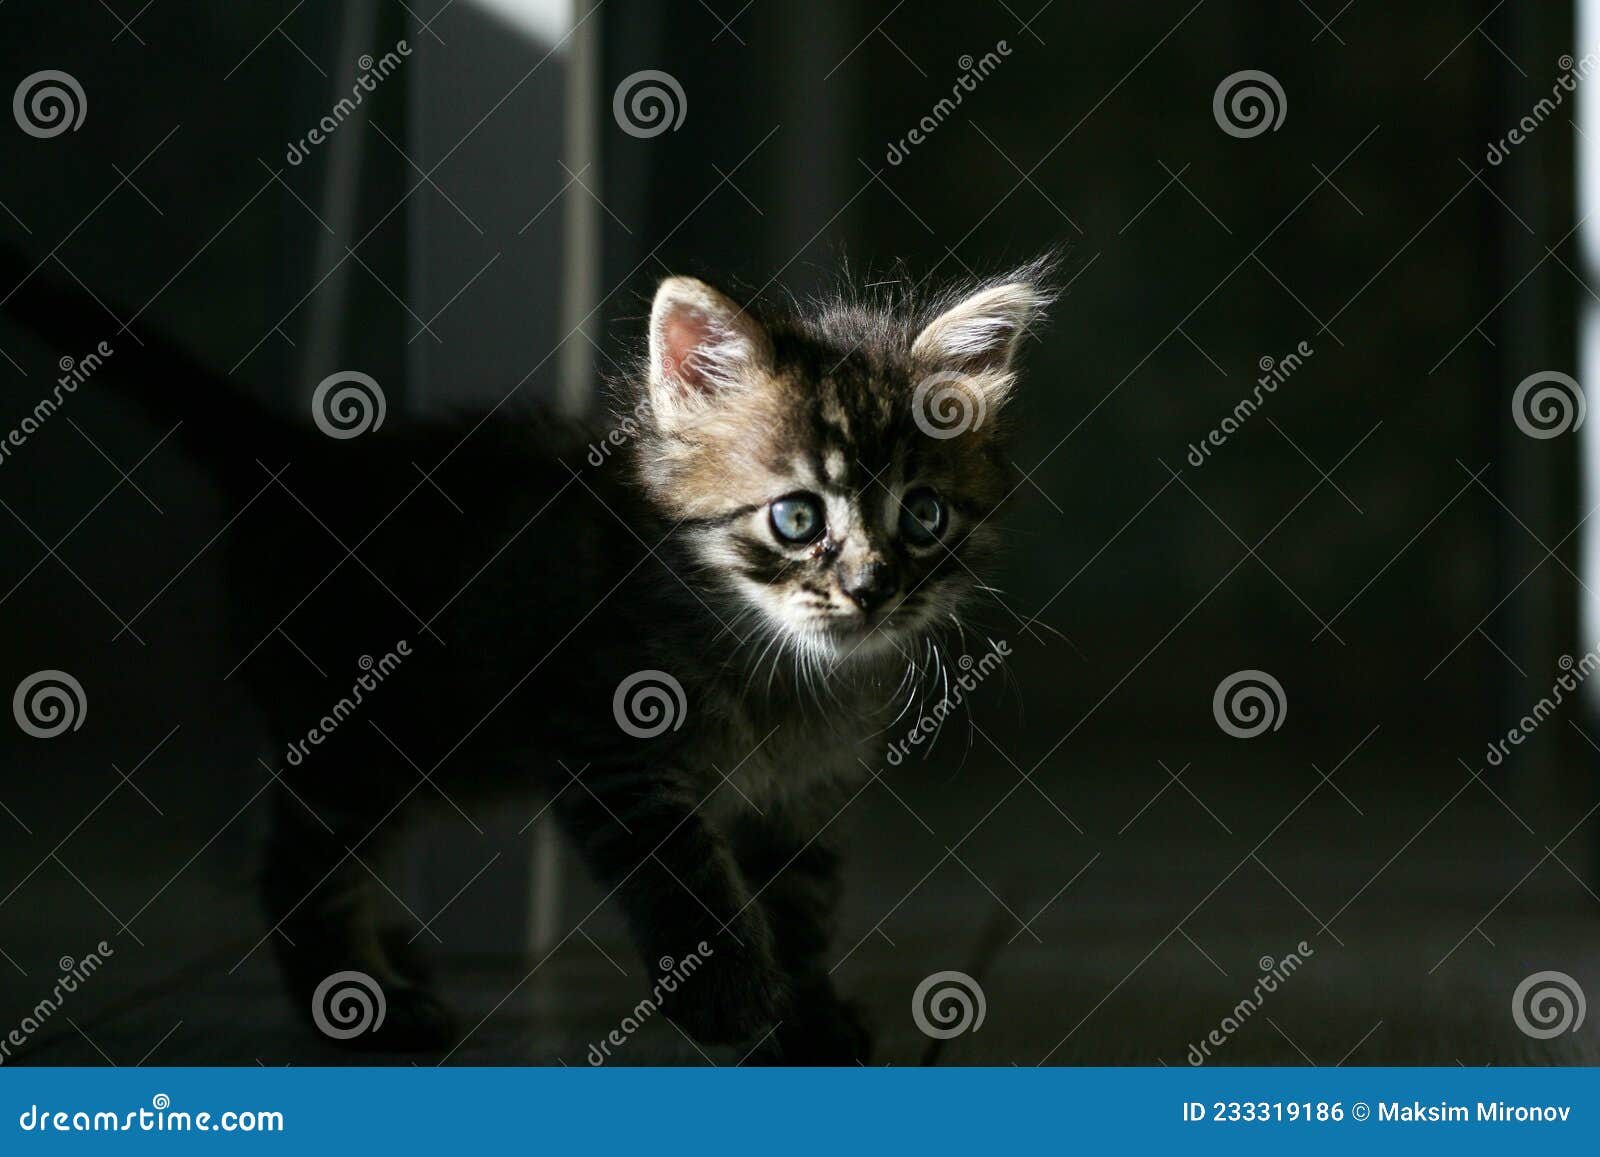 可爱小猫图片下载 - 觅知网